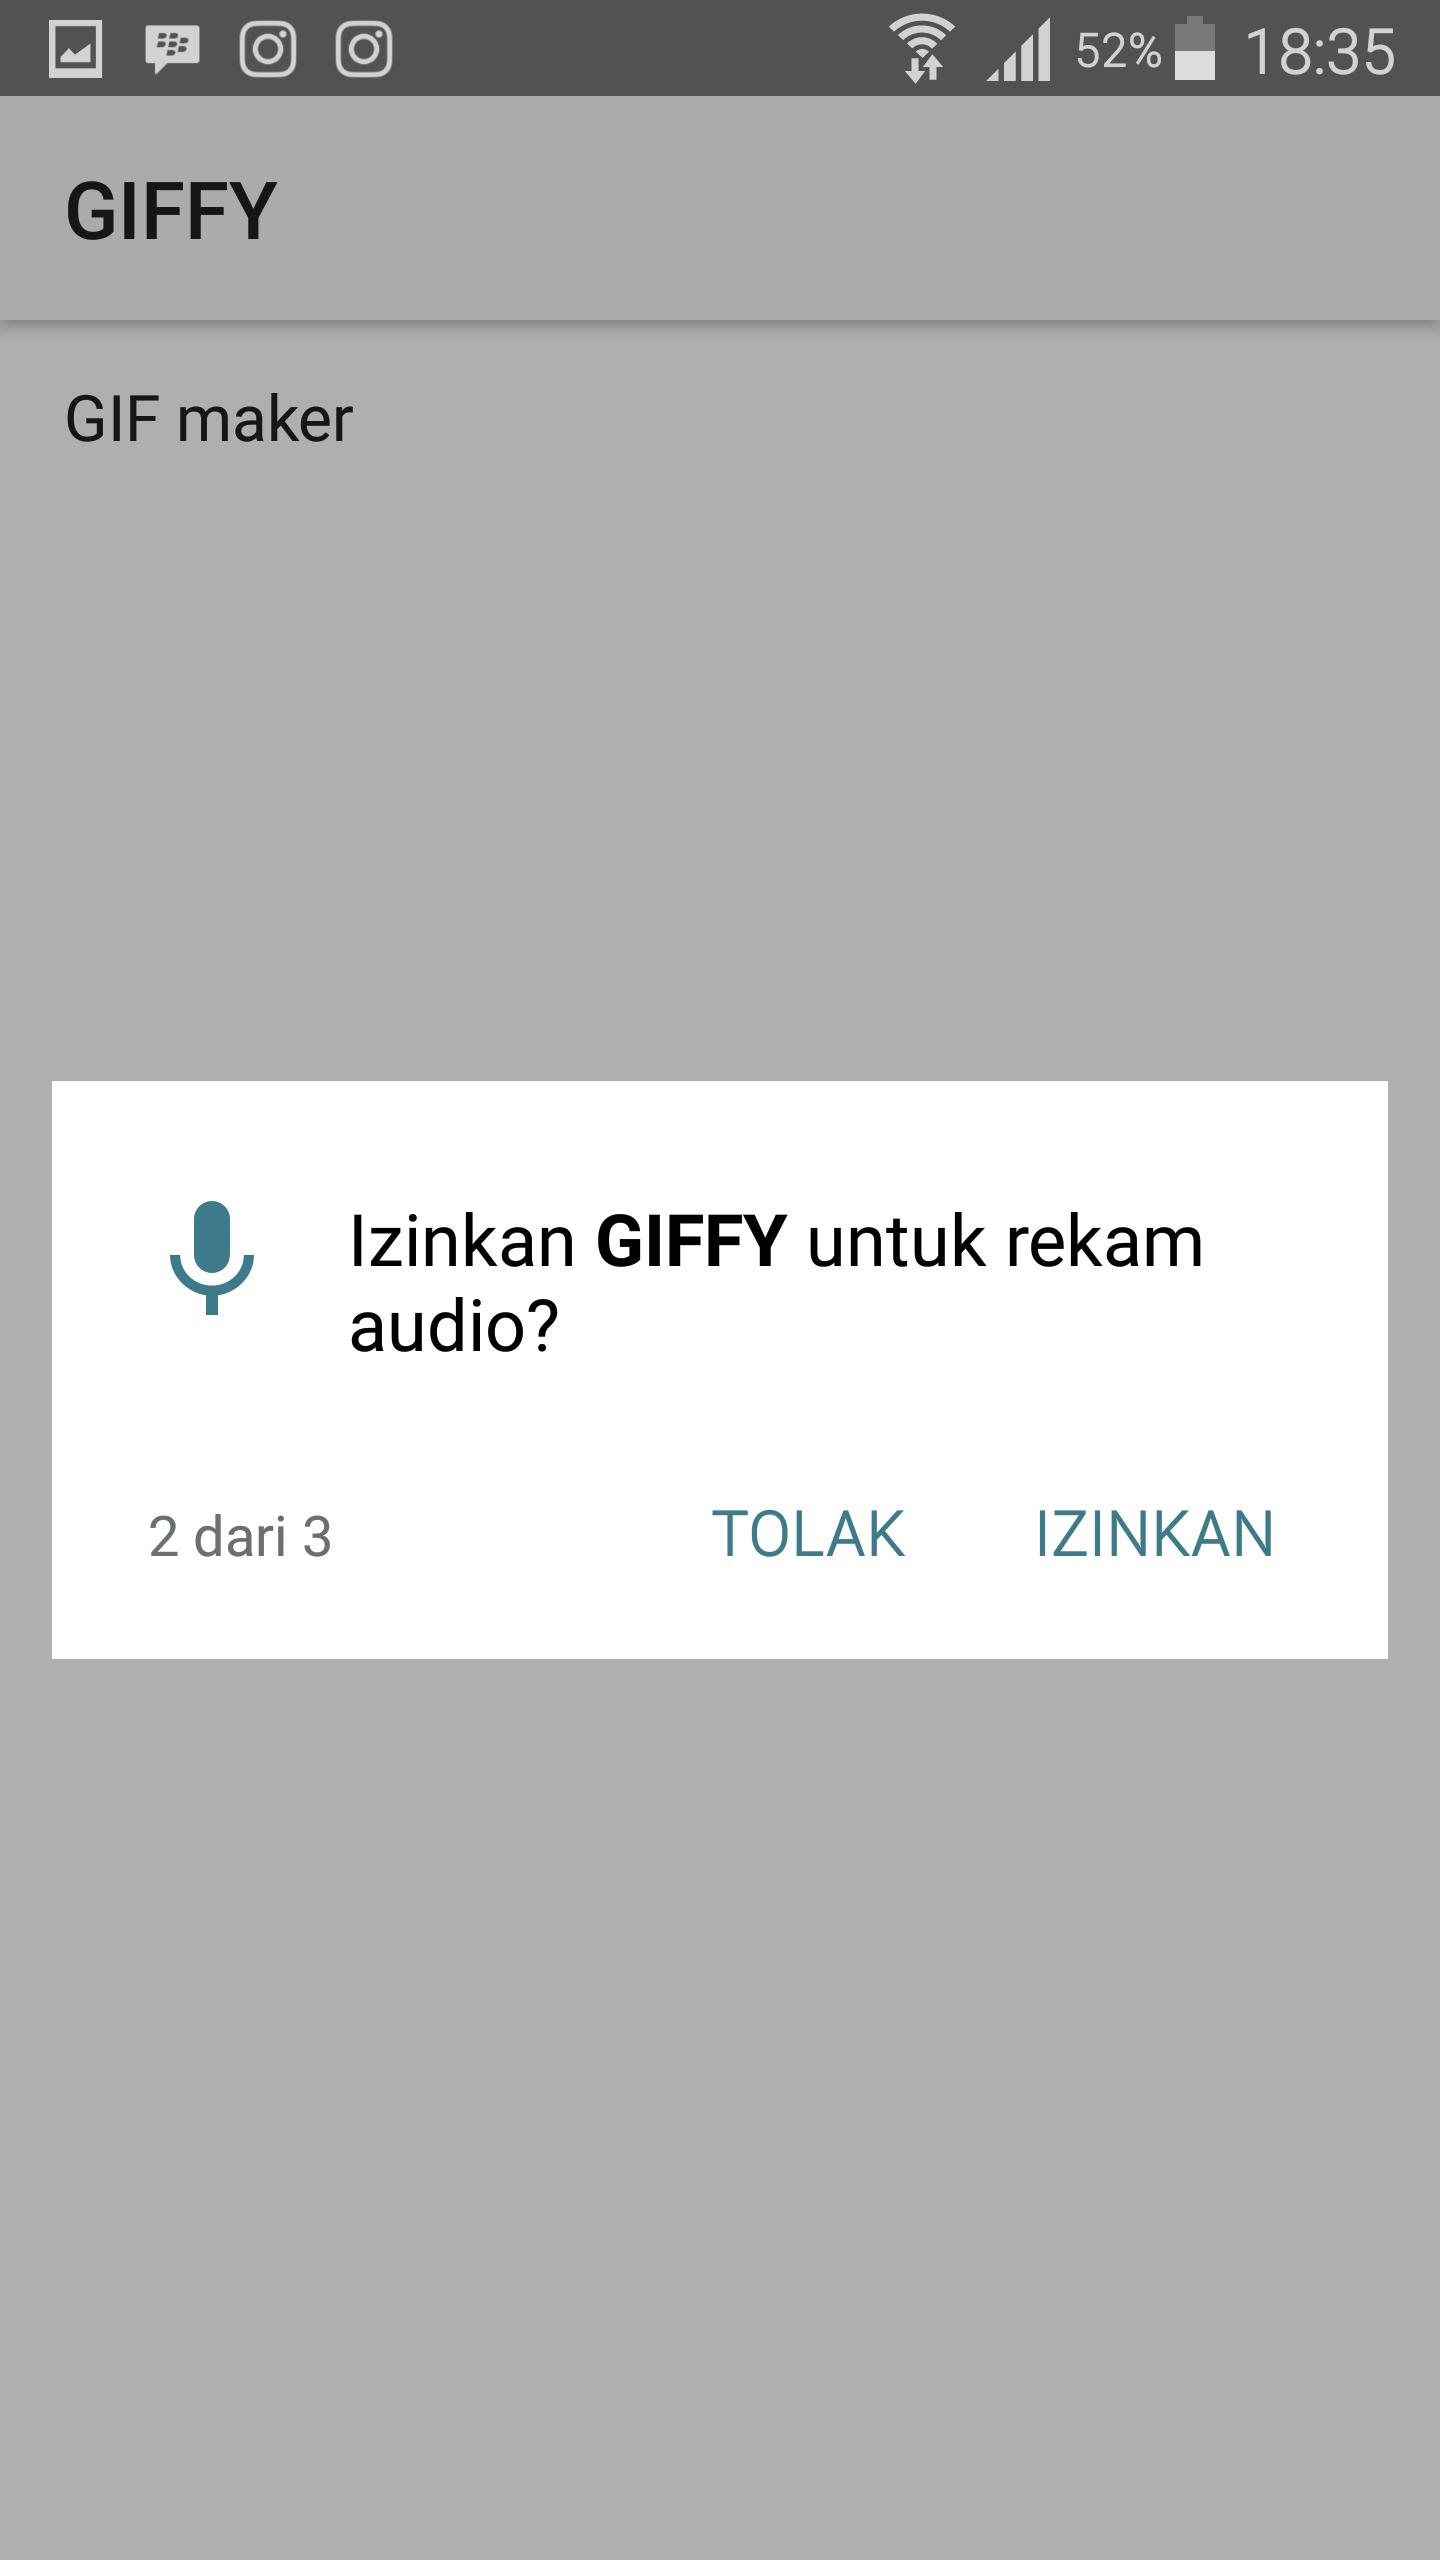 GIFFY : Gif Maker